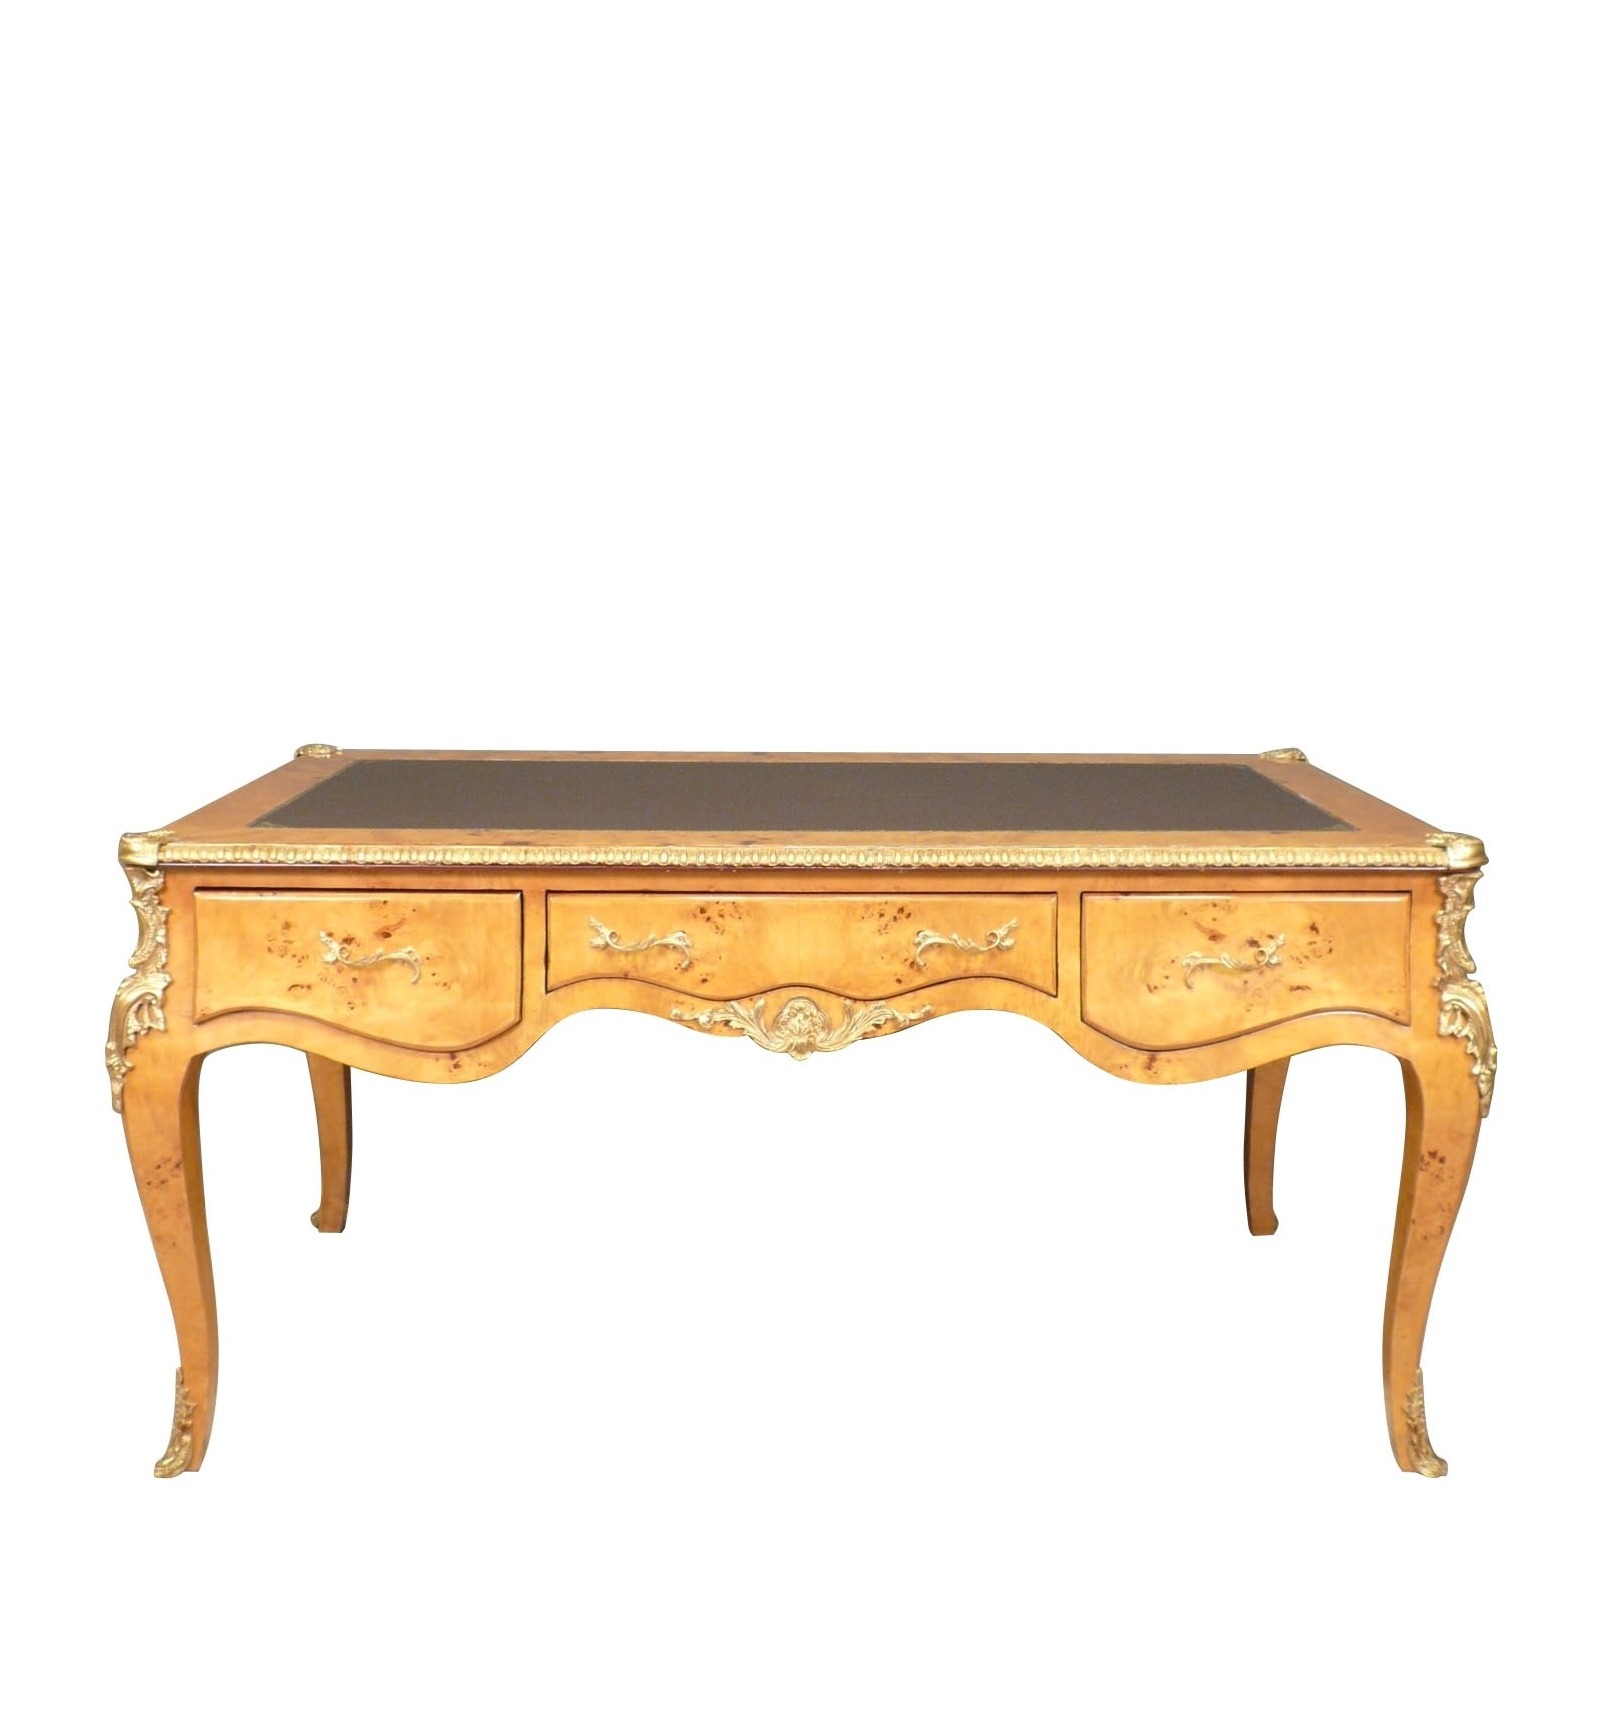 Grande scrivania in stile Luigi XV come una lente d'ingrandimento dell'olmo  - Mobili in stile